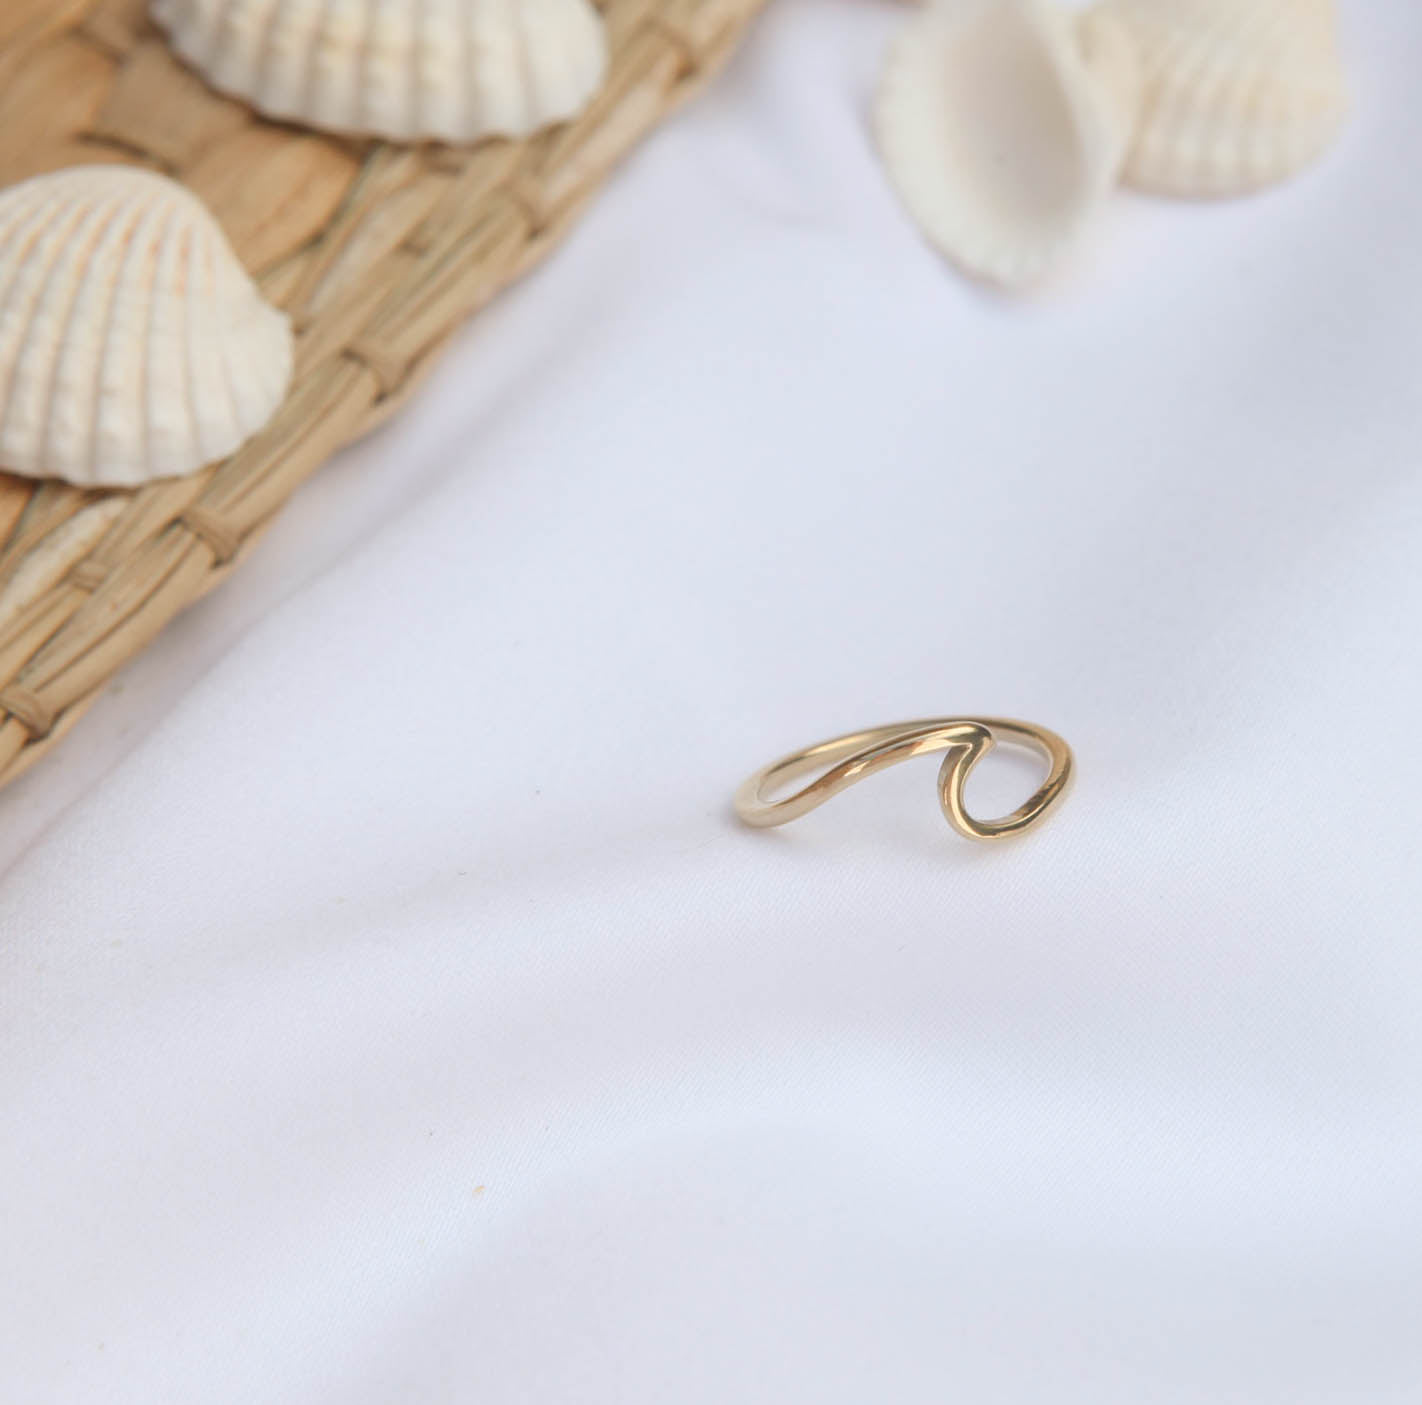 Ocean Wave Ring - Stainless Steel - Ocean Wave Jewelry